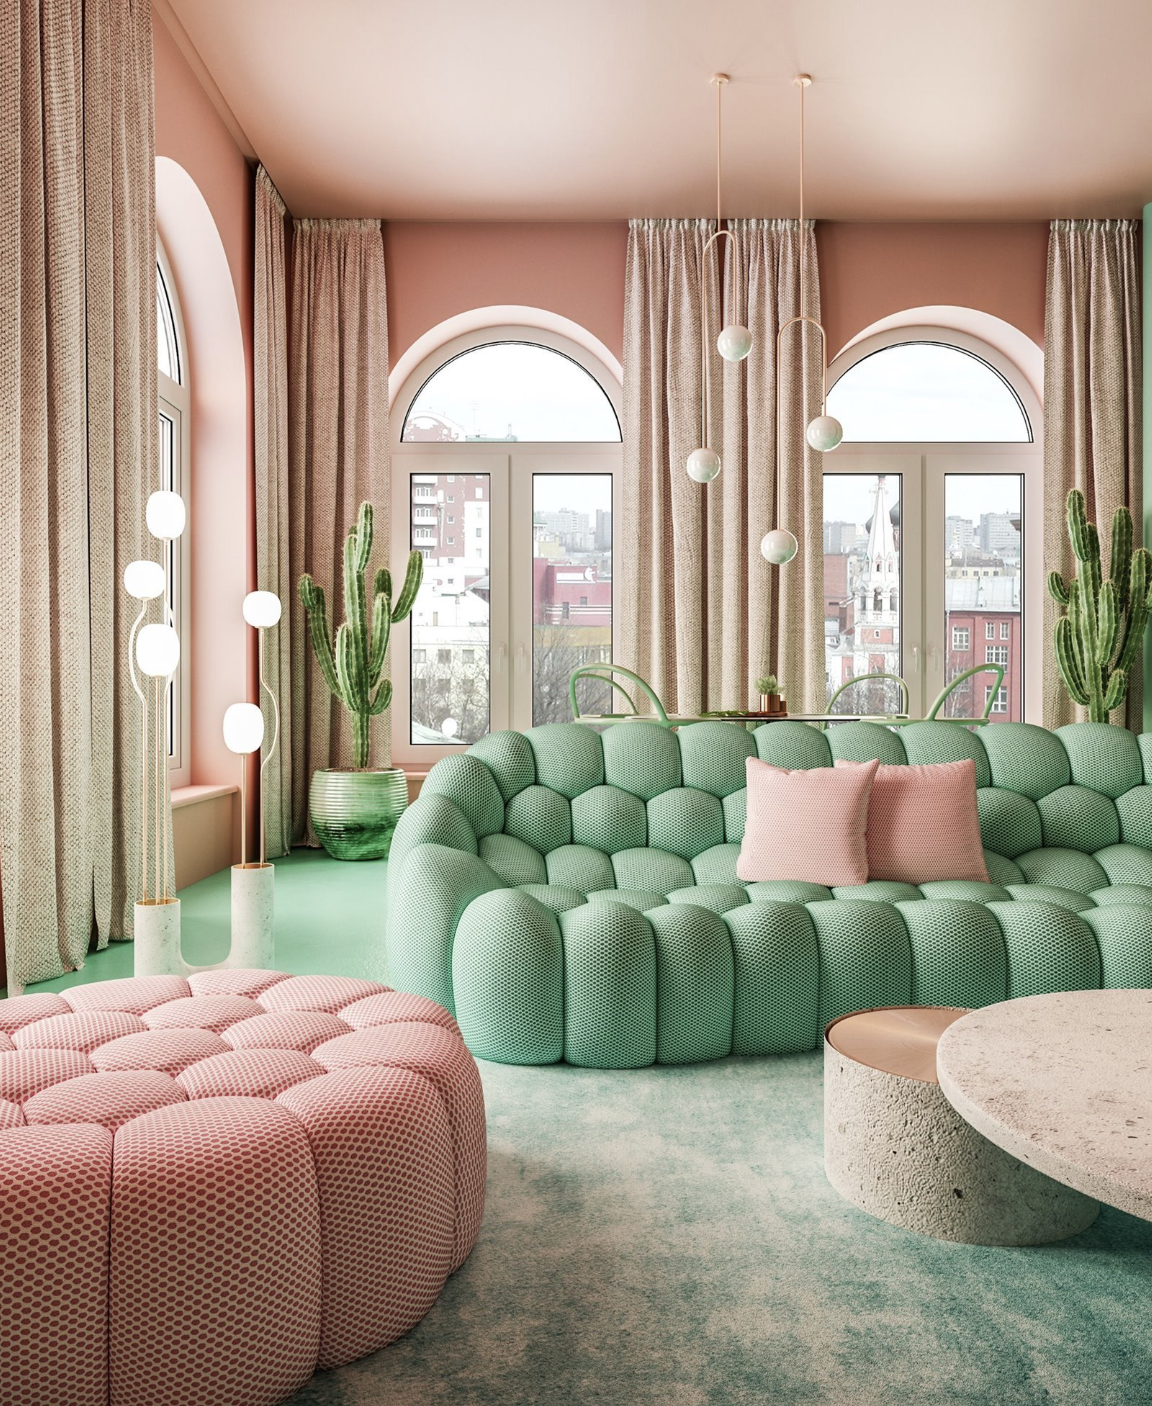 sofas verde y rosa